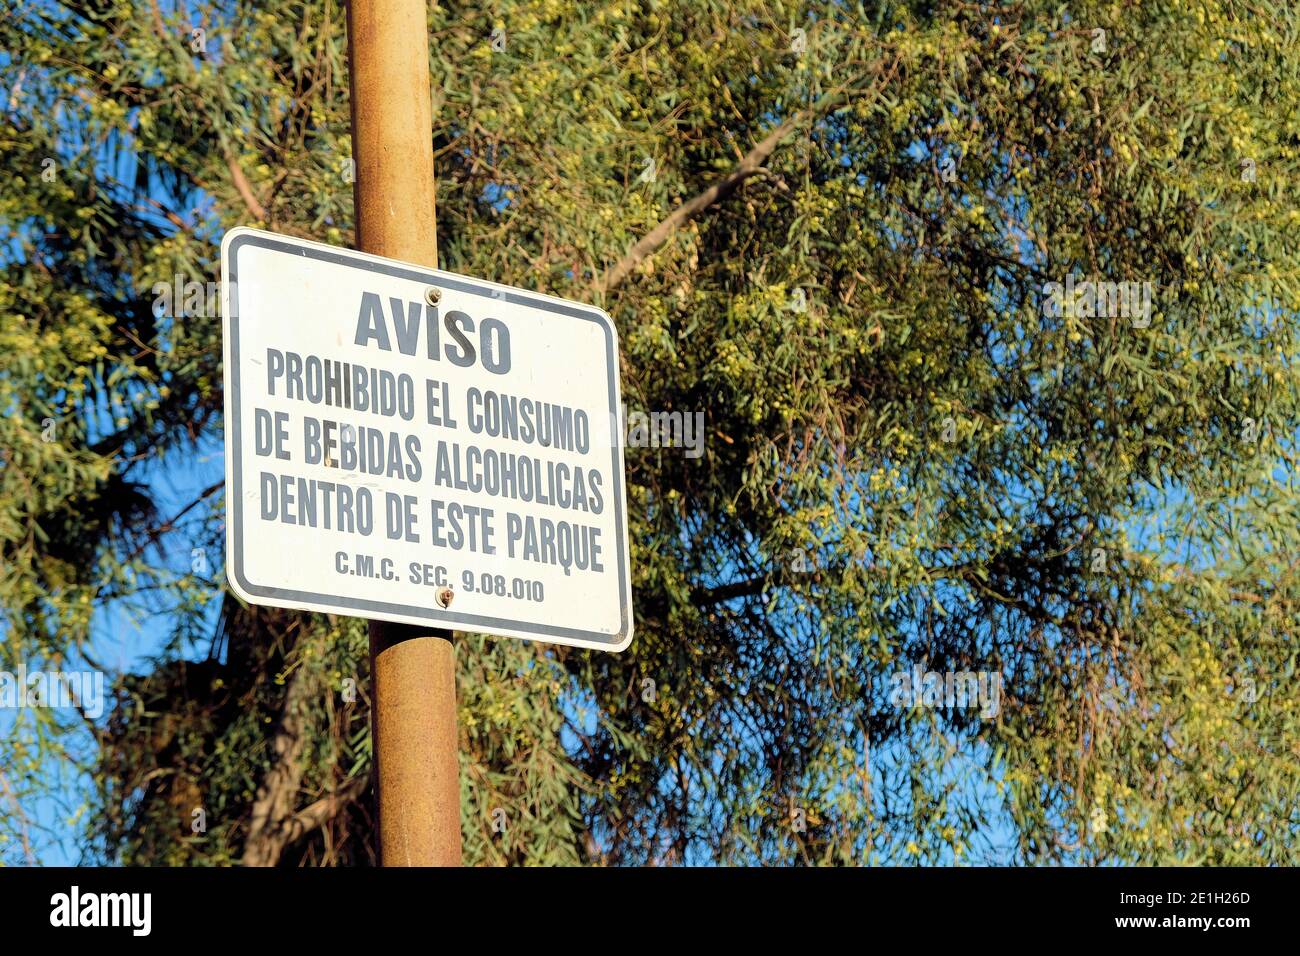 Sign in Spanisch Warnung vor dem Konsum von Alkohol in einem öffentlichen Park unter Berufung auf California City Verordnung 9.08.010 alkoholische Getränke in öffentlichen Ort. Stockfoto